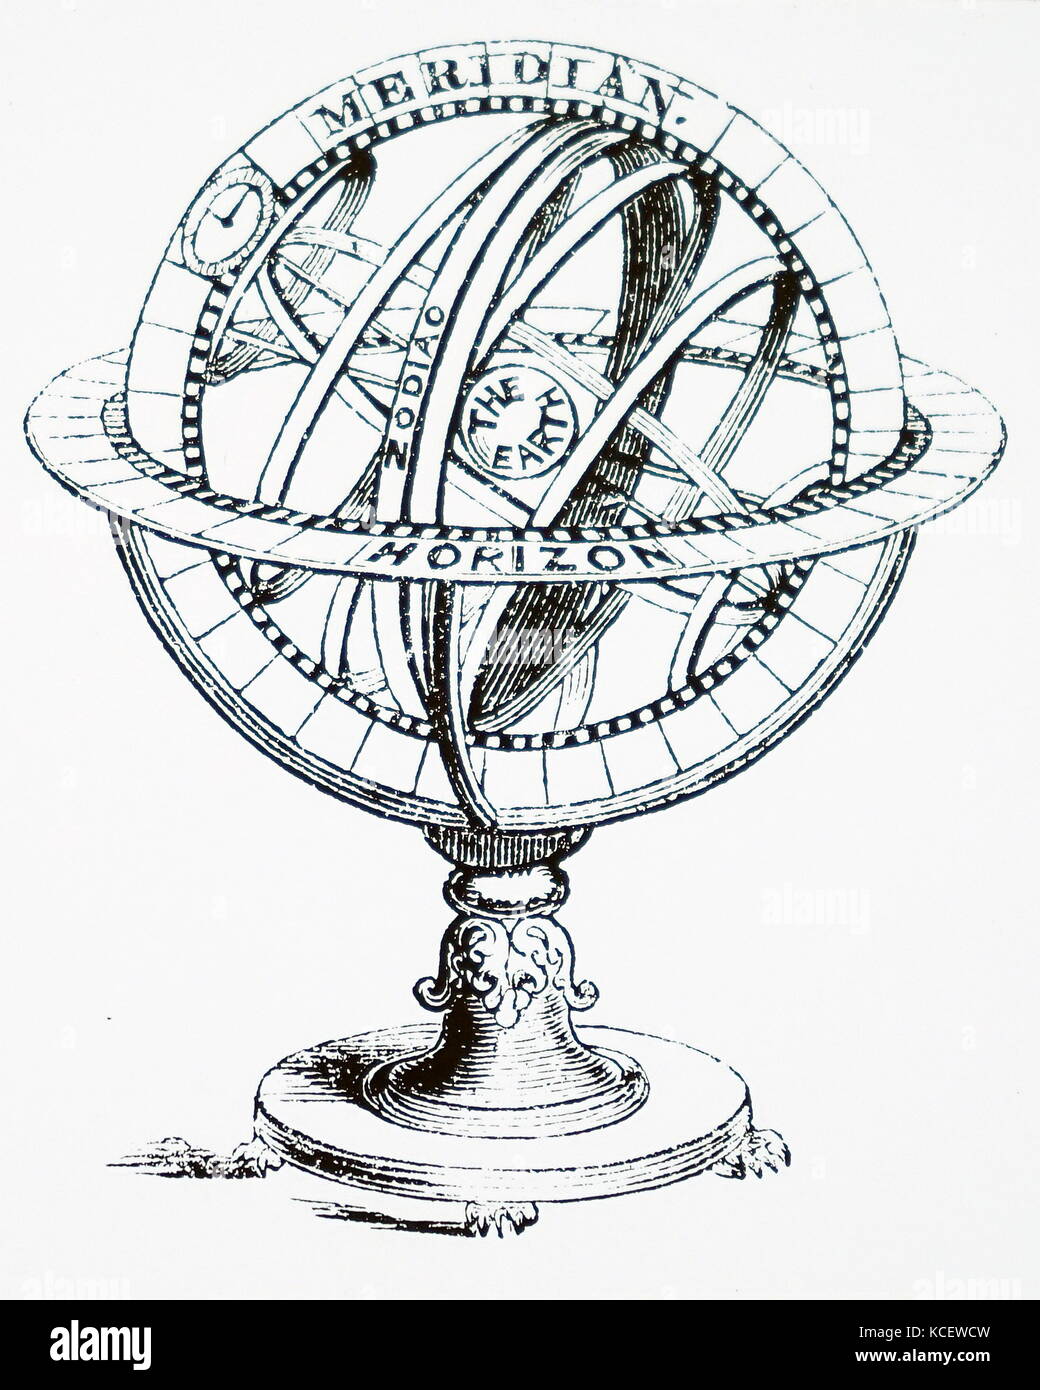 Illustrazione raffigurante una sfera armillare. Una sfera armillare è un modello di oggetti nel cielo costituito da un quadro di forma sferica di anelli, centrato sulla terra o il sole, che rappresentano le linee celesti di longitudine e latitudine ed altri astronomicamente importanti caratteristiche come l'eclittica. Datata XVI Secolo Foto Stock